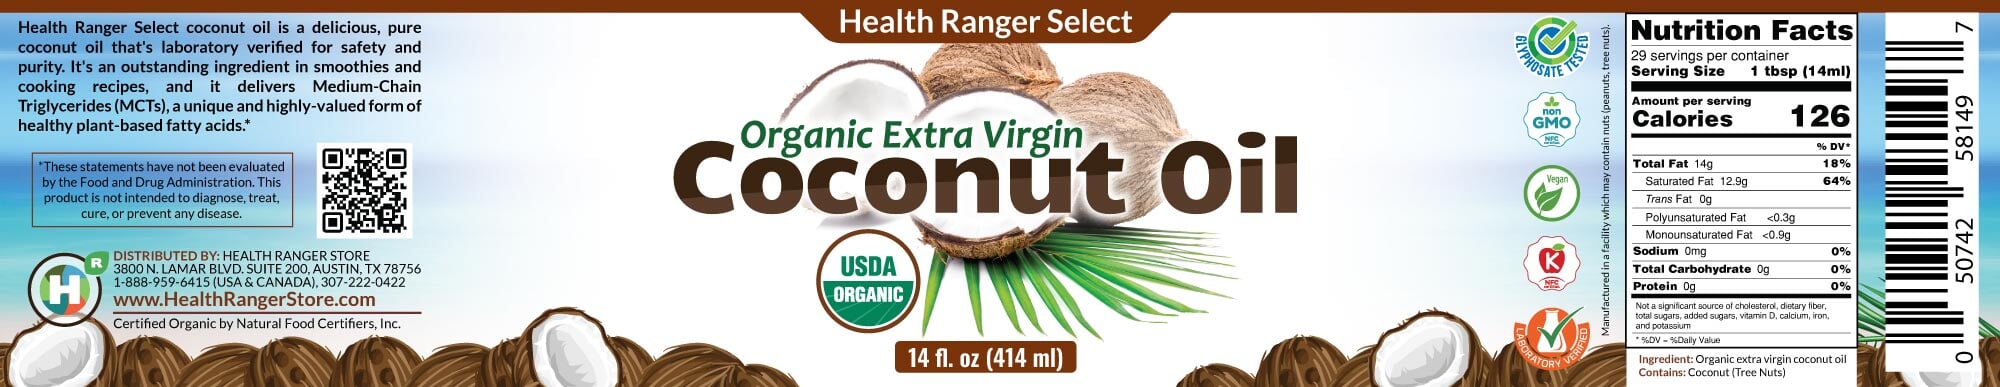 Organic Extra Virgin Coconut Oil 14 oz Coconut Brighteon Store 